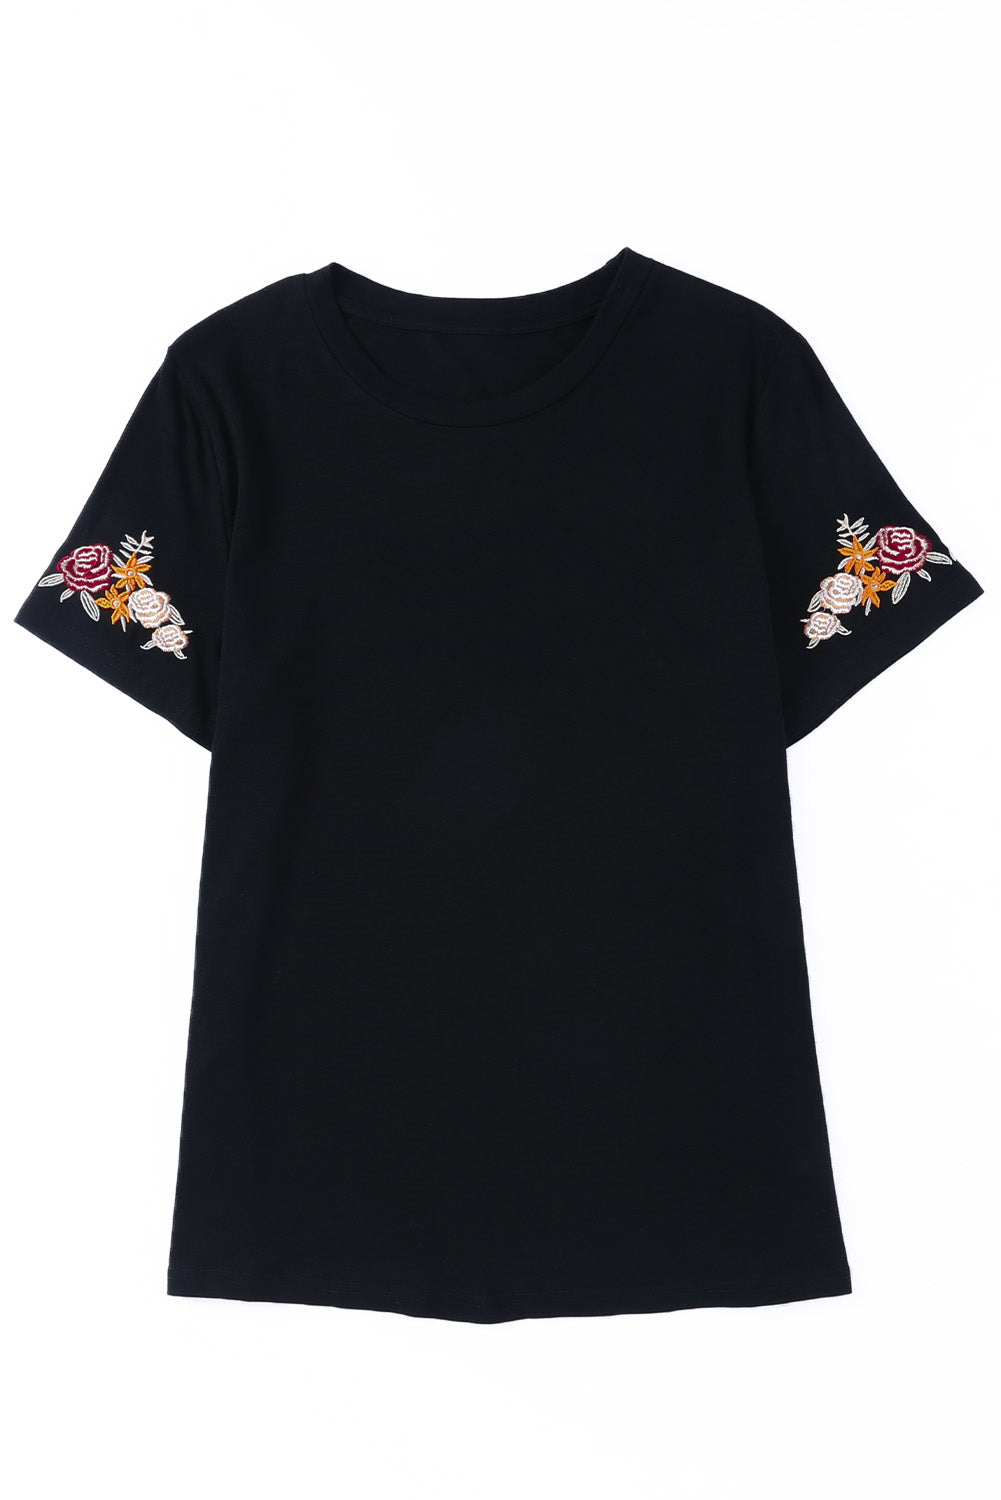 T-shirt noir à manches courtes et col rond brodé de fleurs